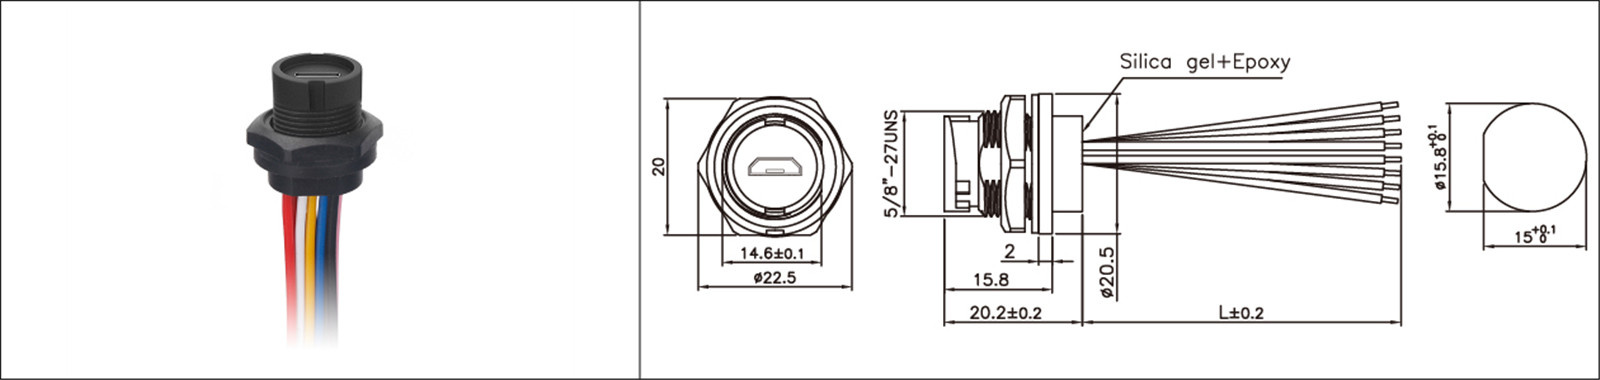 Mikro-USB-paneelmontering tipe 2.0 3.0 vroulike en manlike waterdigte IP67 oorvorm verlengkabel industriële connecto-02 (12)